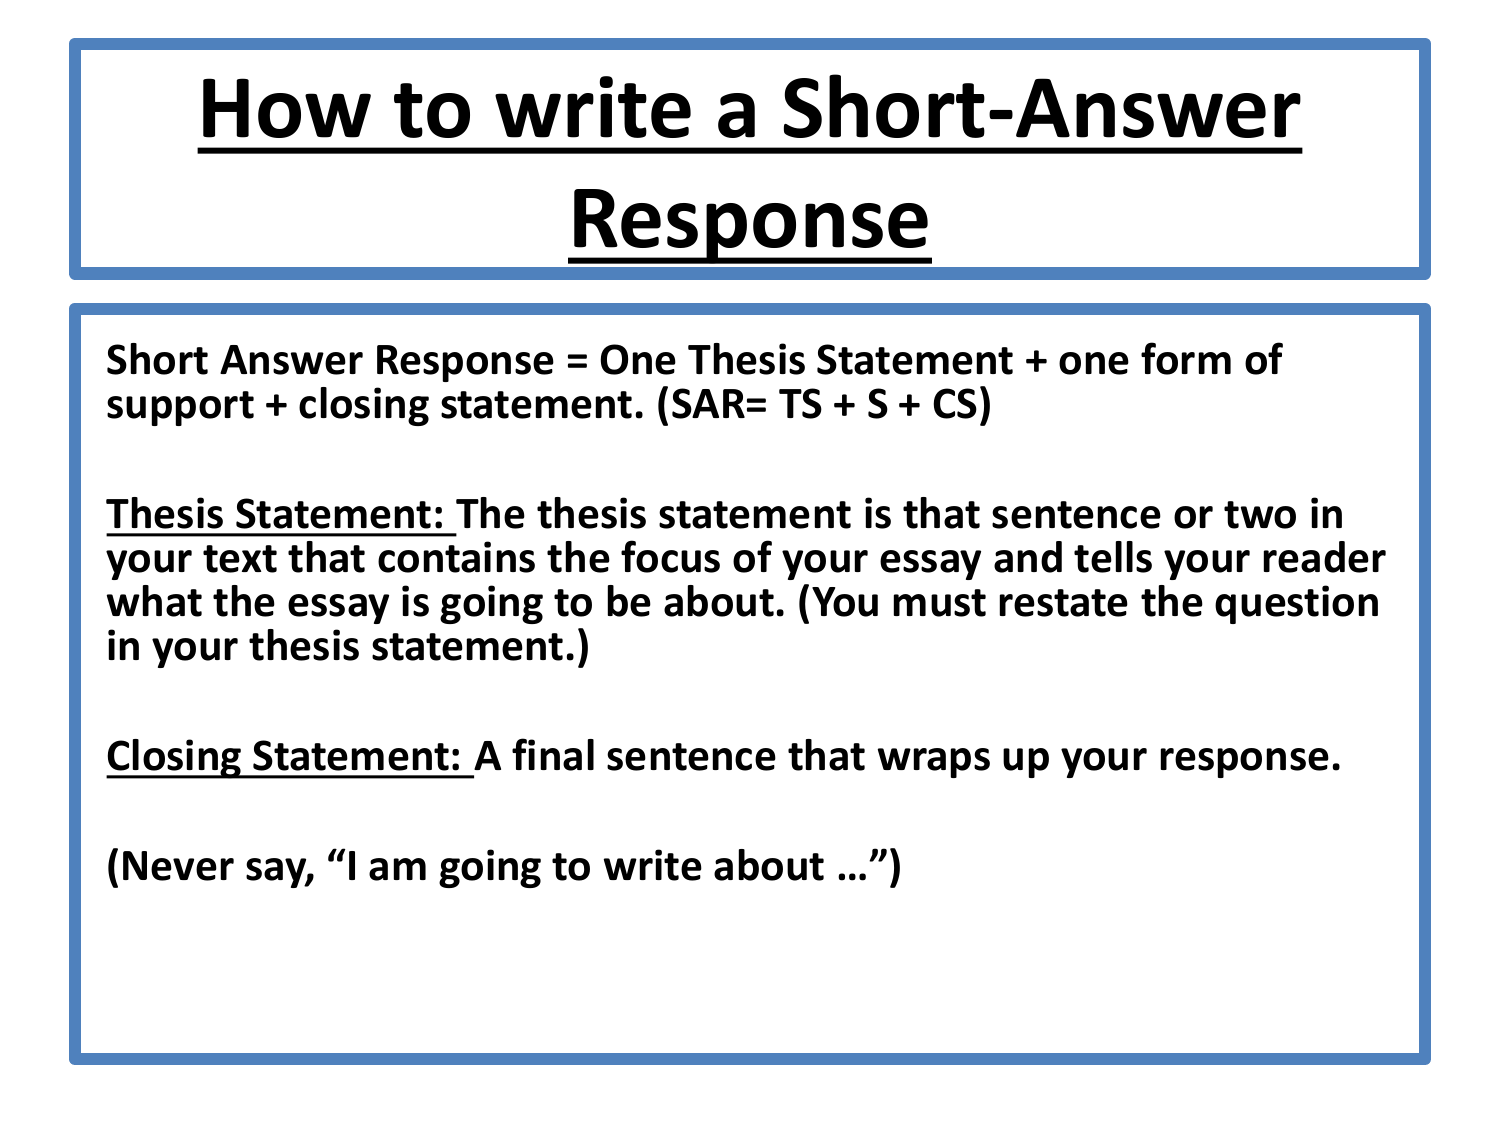 how long should a short essay response be